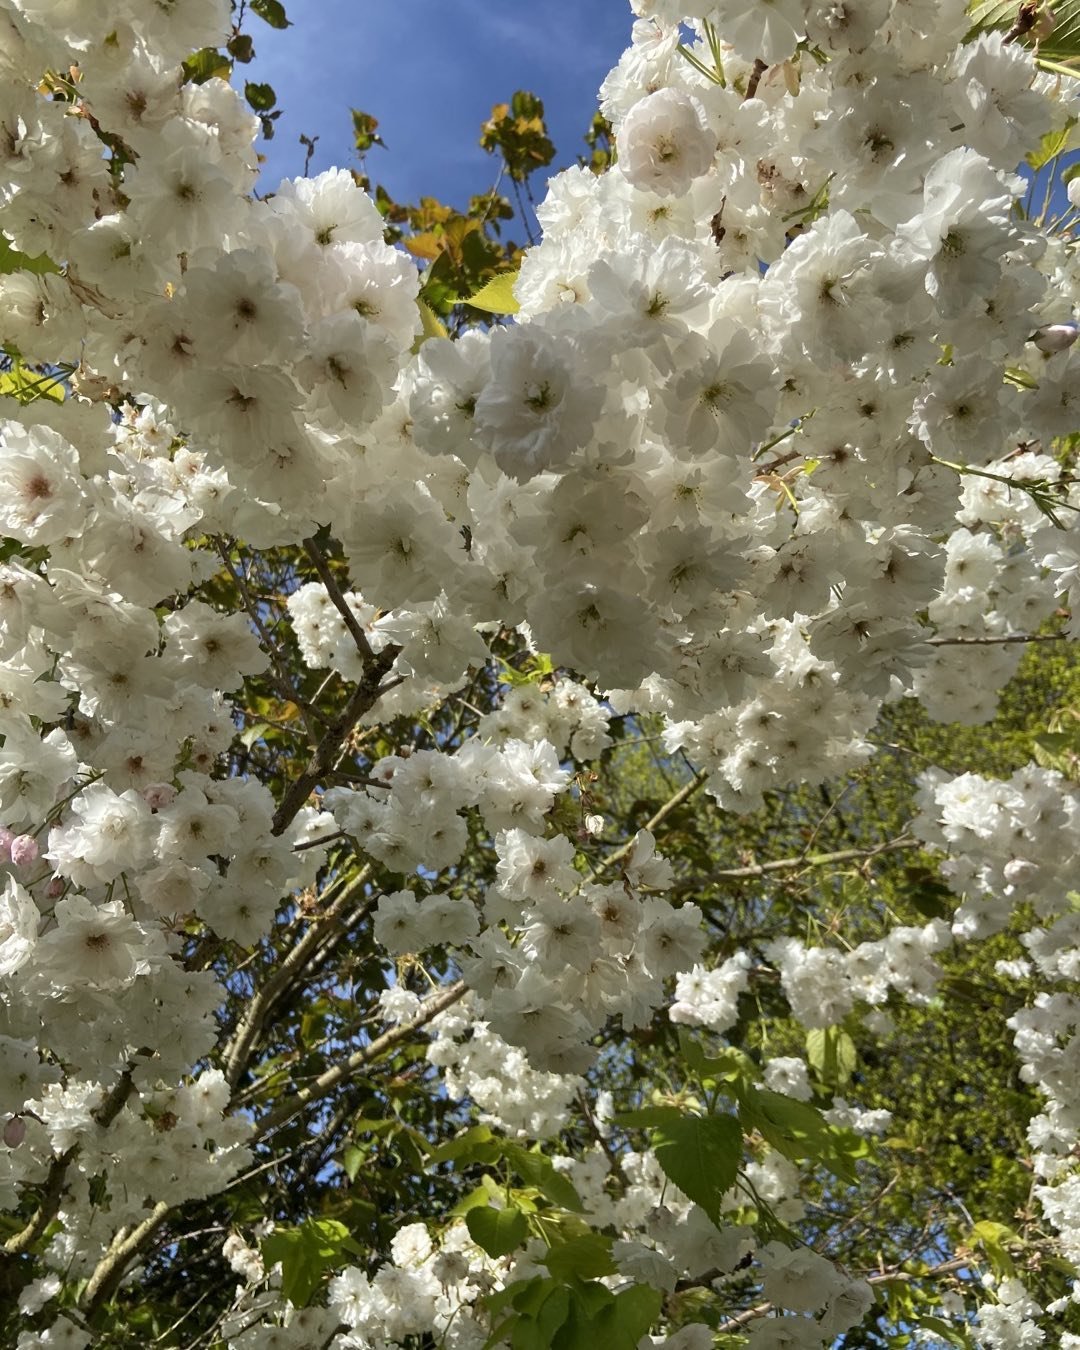 Good morning

#blossom #blossoms #blossomsoflight #lesleyseegerpaintings #whiteblossoms #whiteblossomtree #artistsinspiration #whiteflowers #white